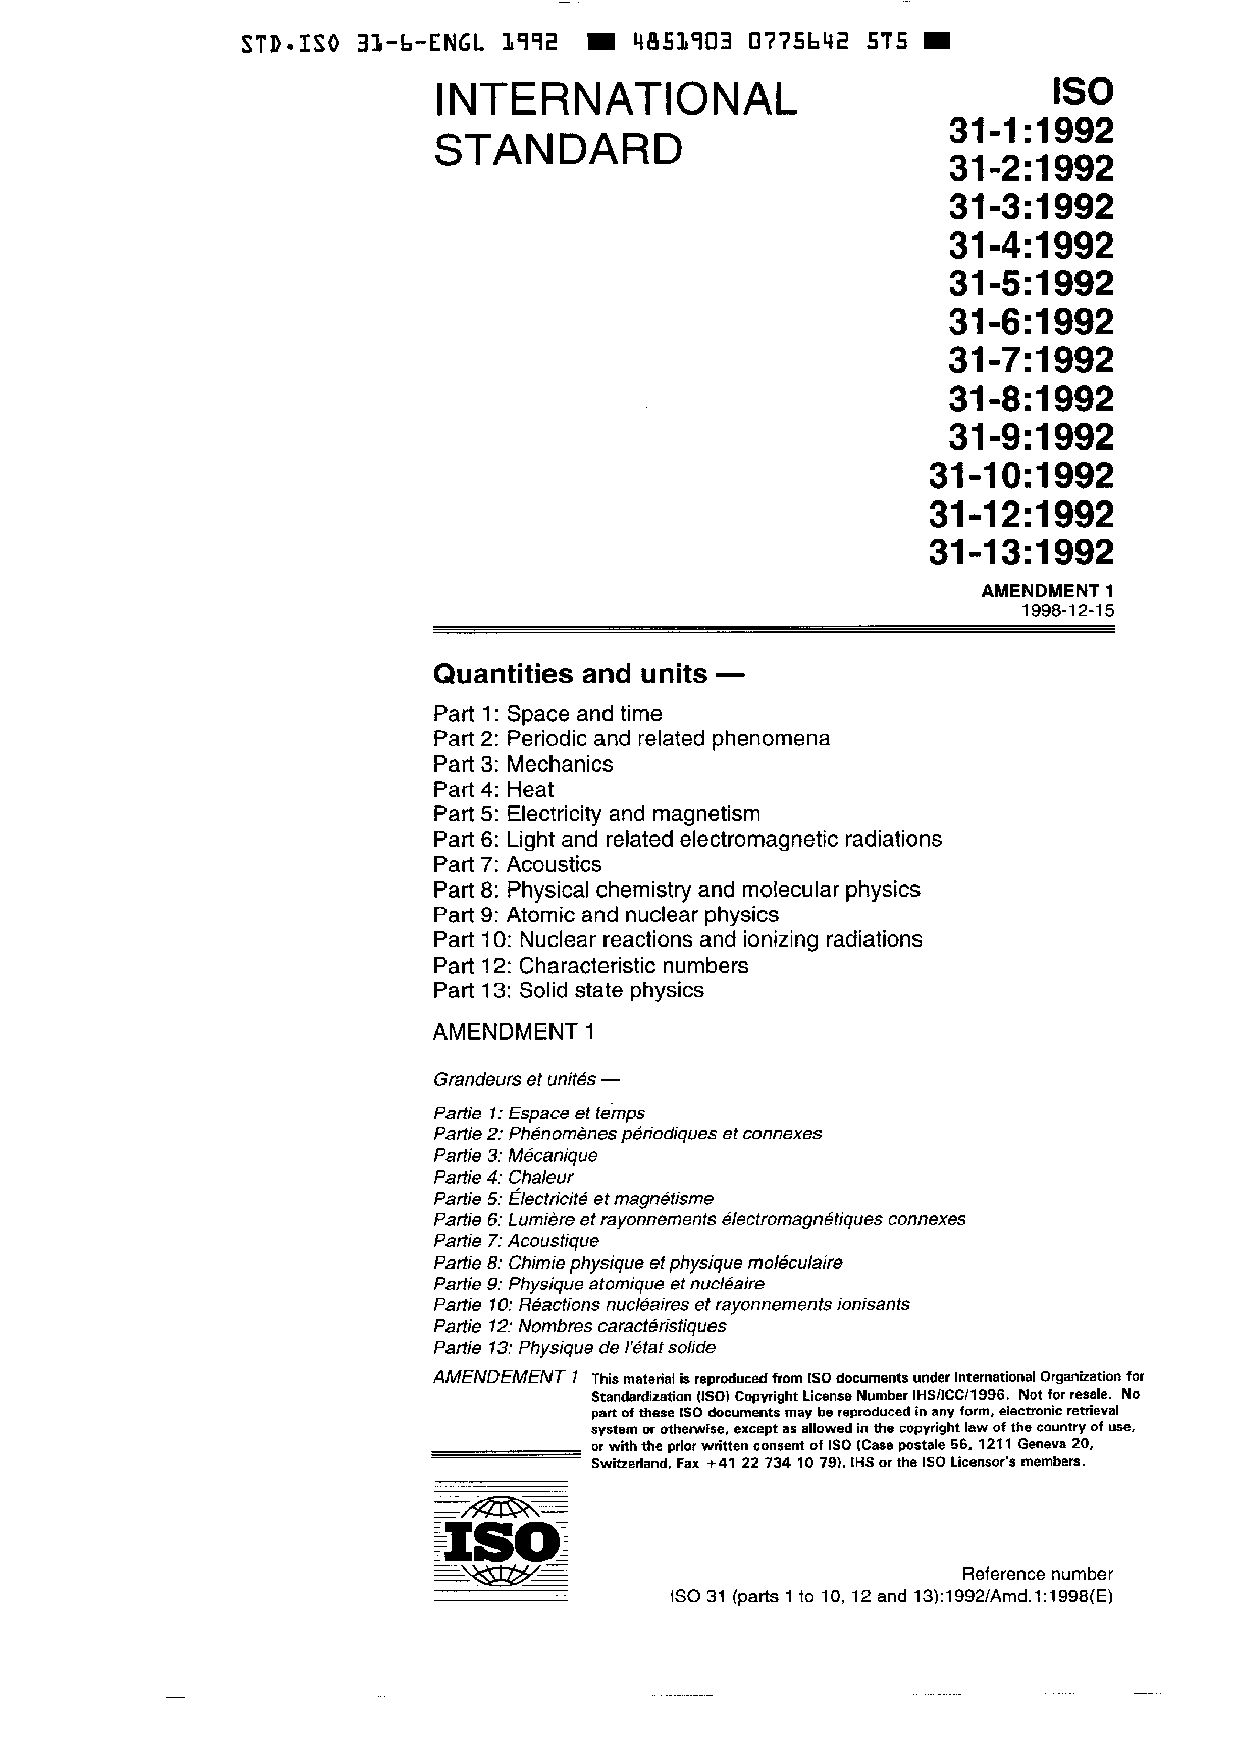 ISO 31-6-1992/Amd 1-1998